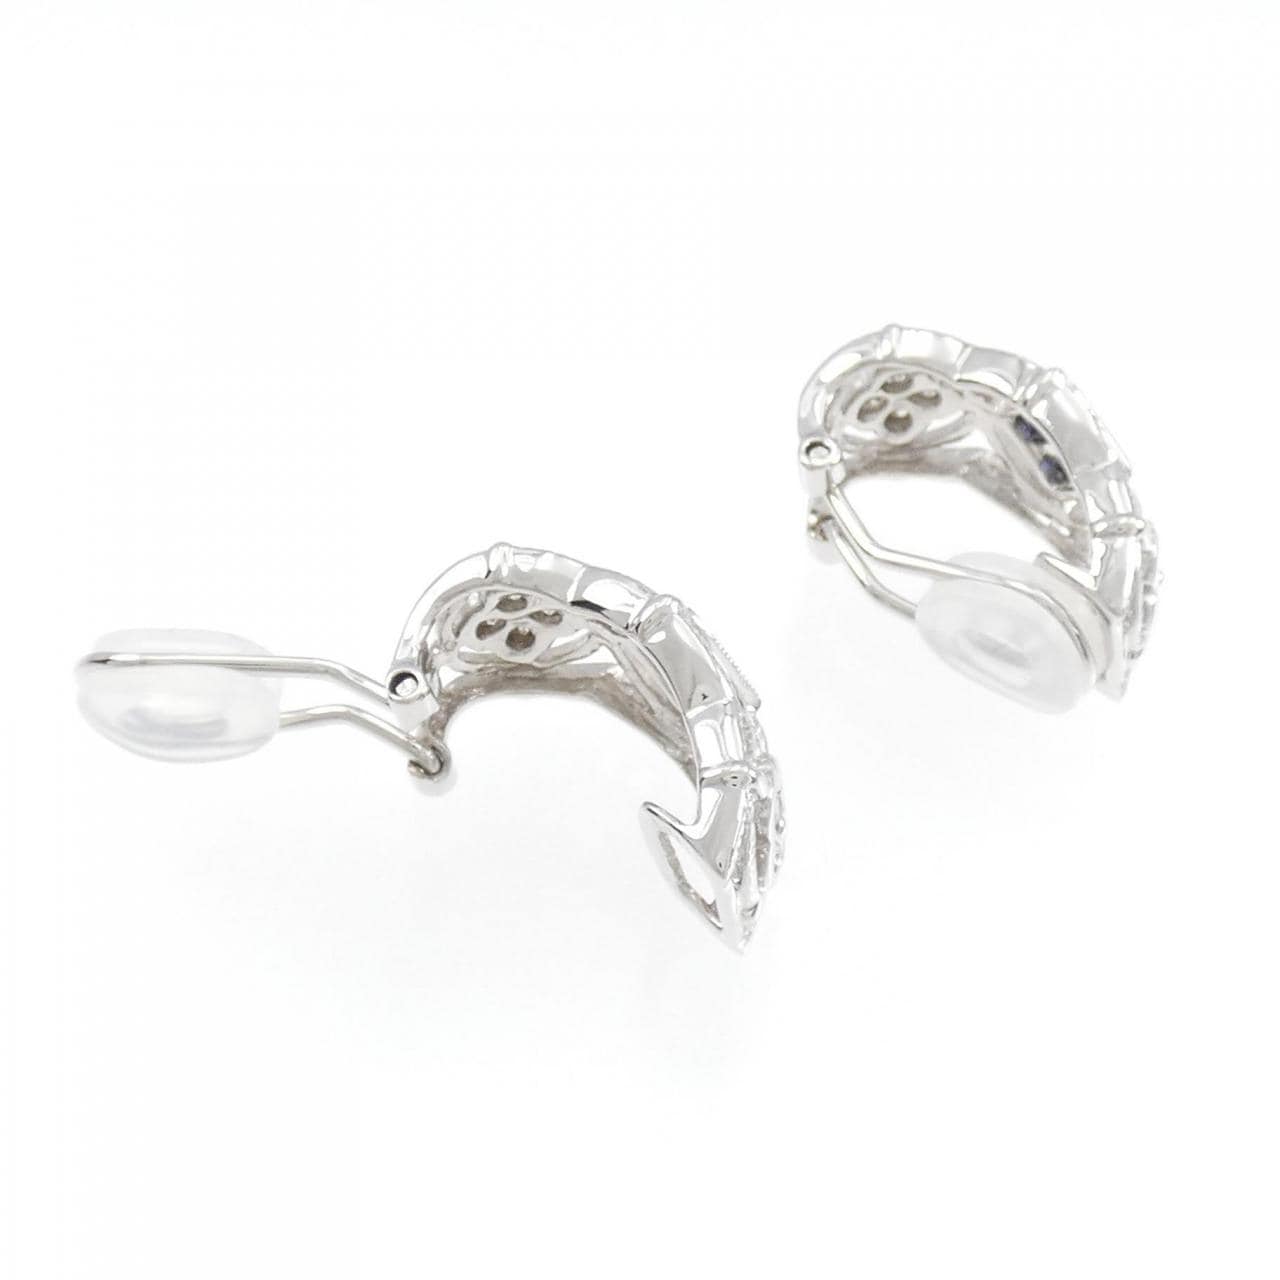 K18WG sapphire earrings 0.60CT